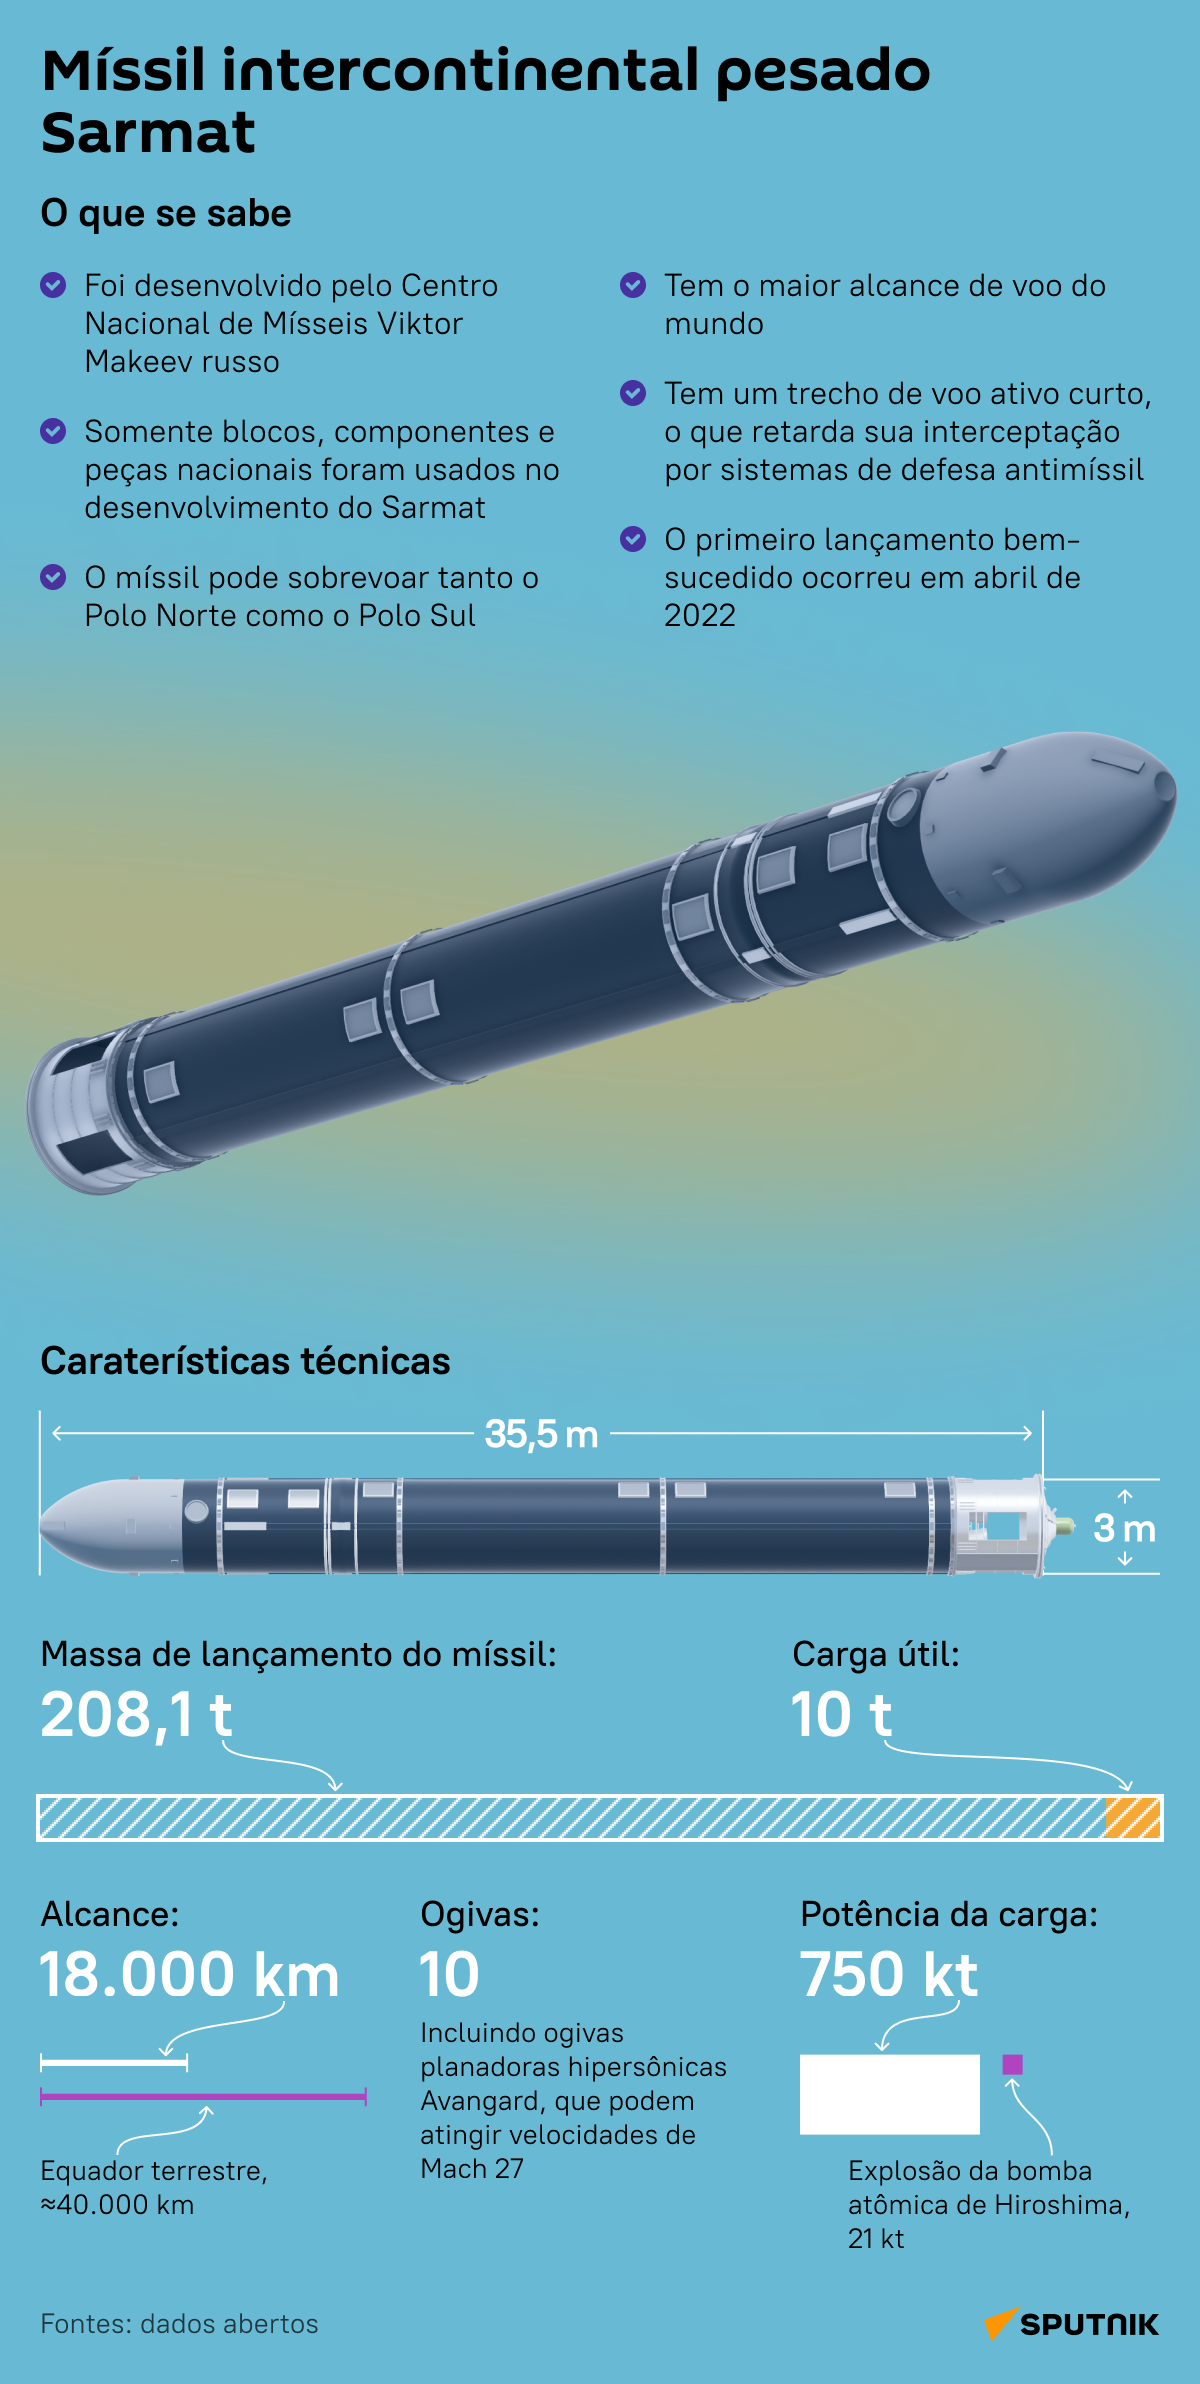 Conheça o míssil intercontinental russo Sarmat, com o maior alcance de voo no mundo - Sputnik Brasil